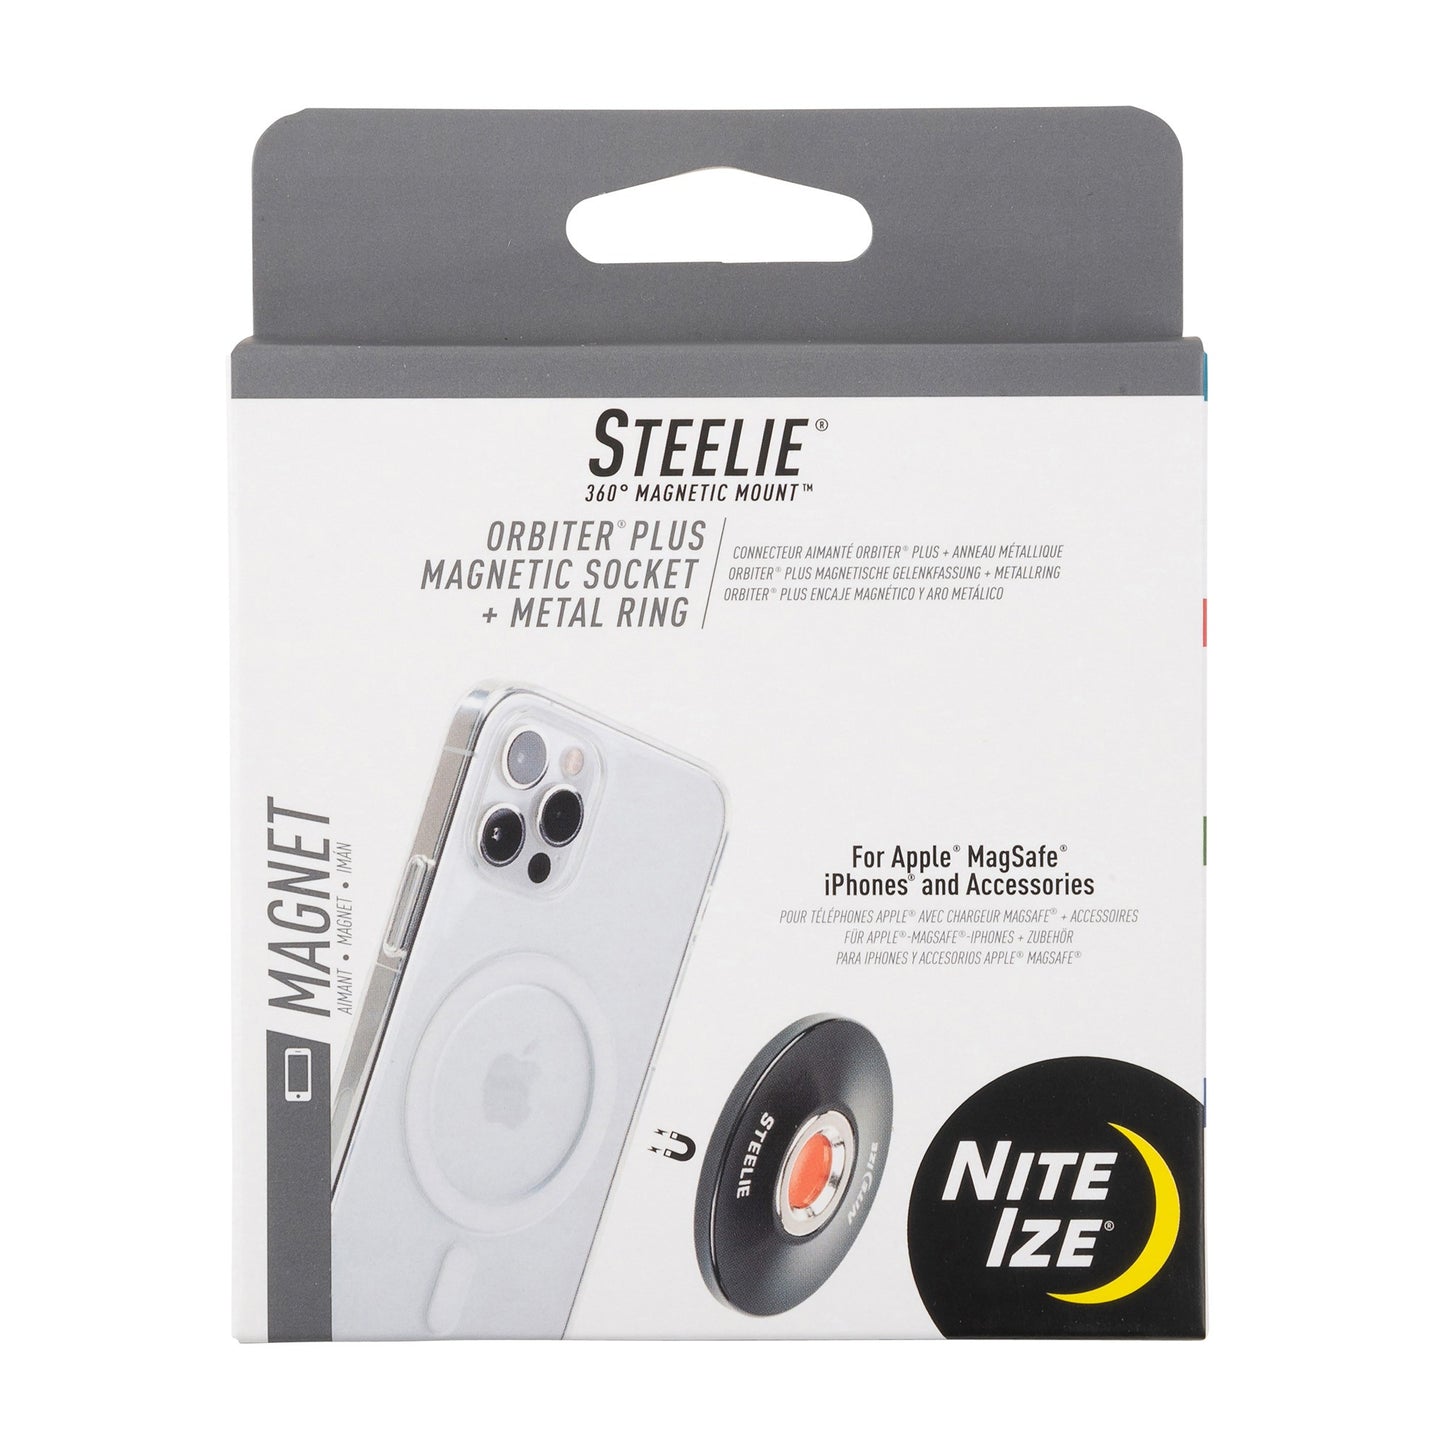 Nite Ize Steelie Orbiter Plus Magnetic Socket + Metal Ring - 15-09674